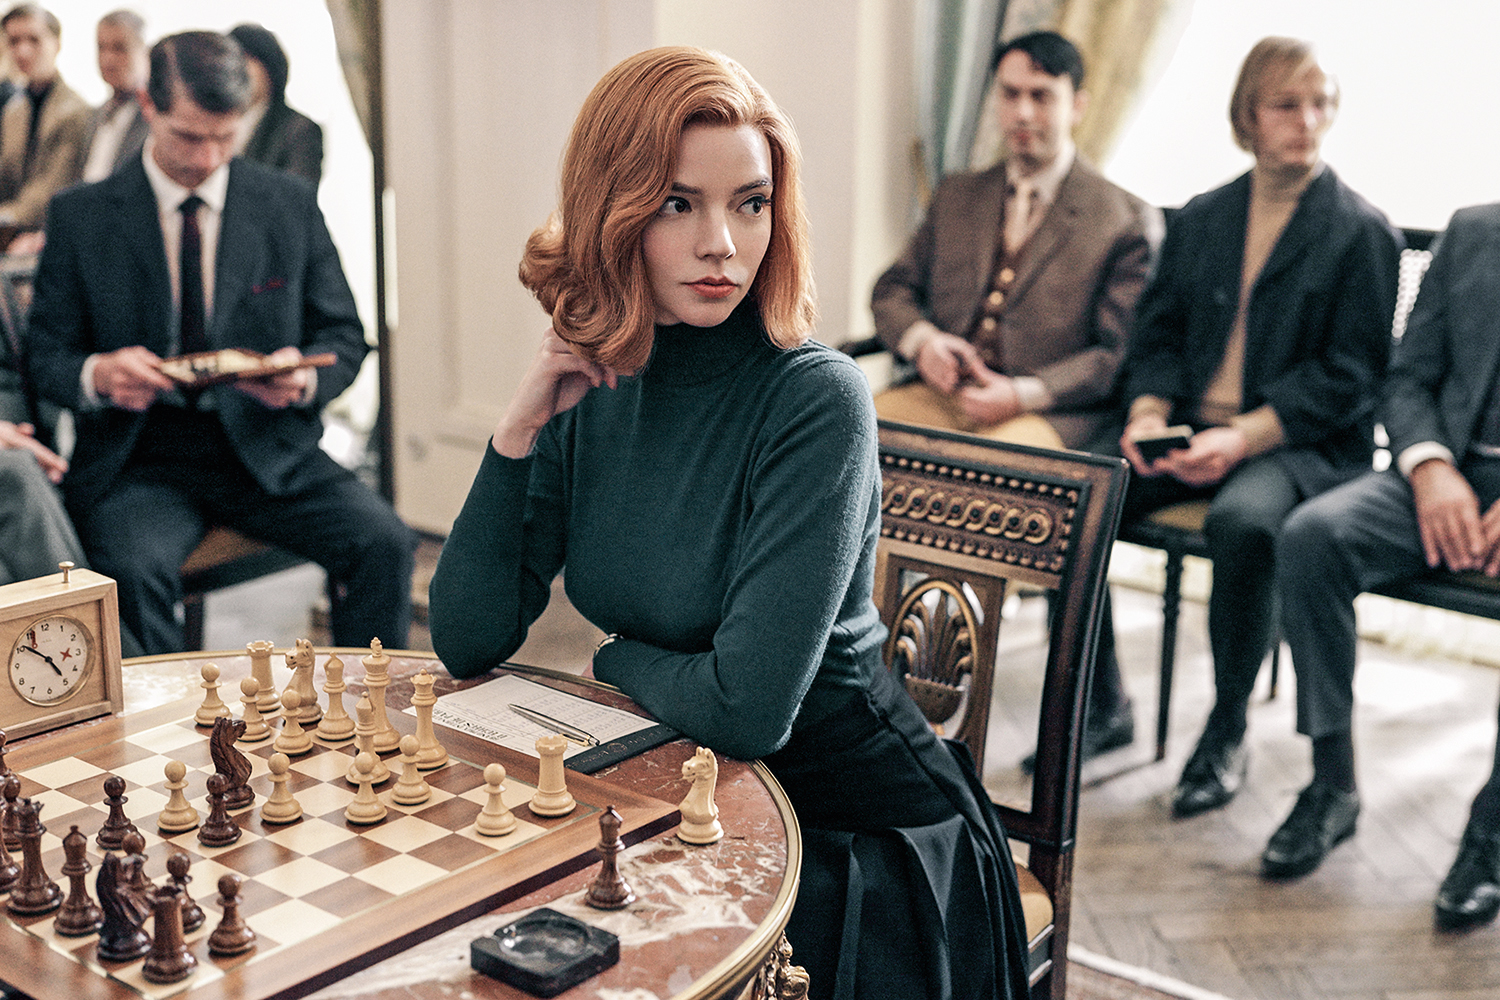 O Gambito da Rainha: 10 itens para quem deseja aprender a jogar xadrez